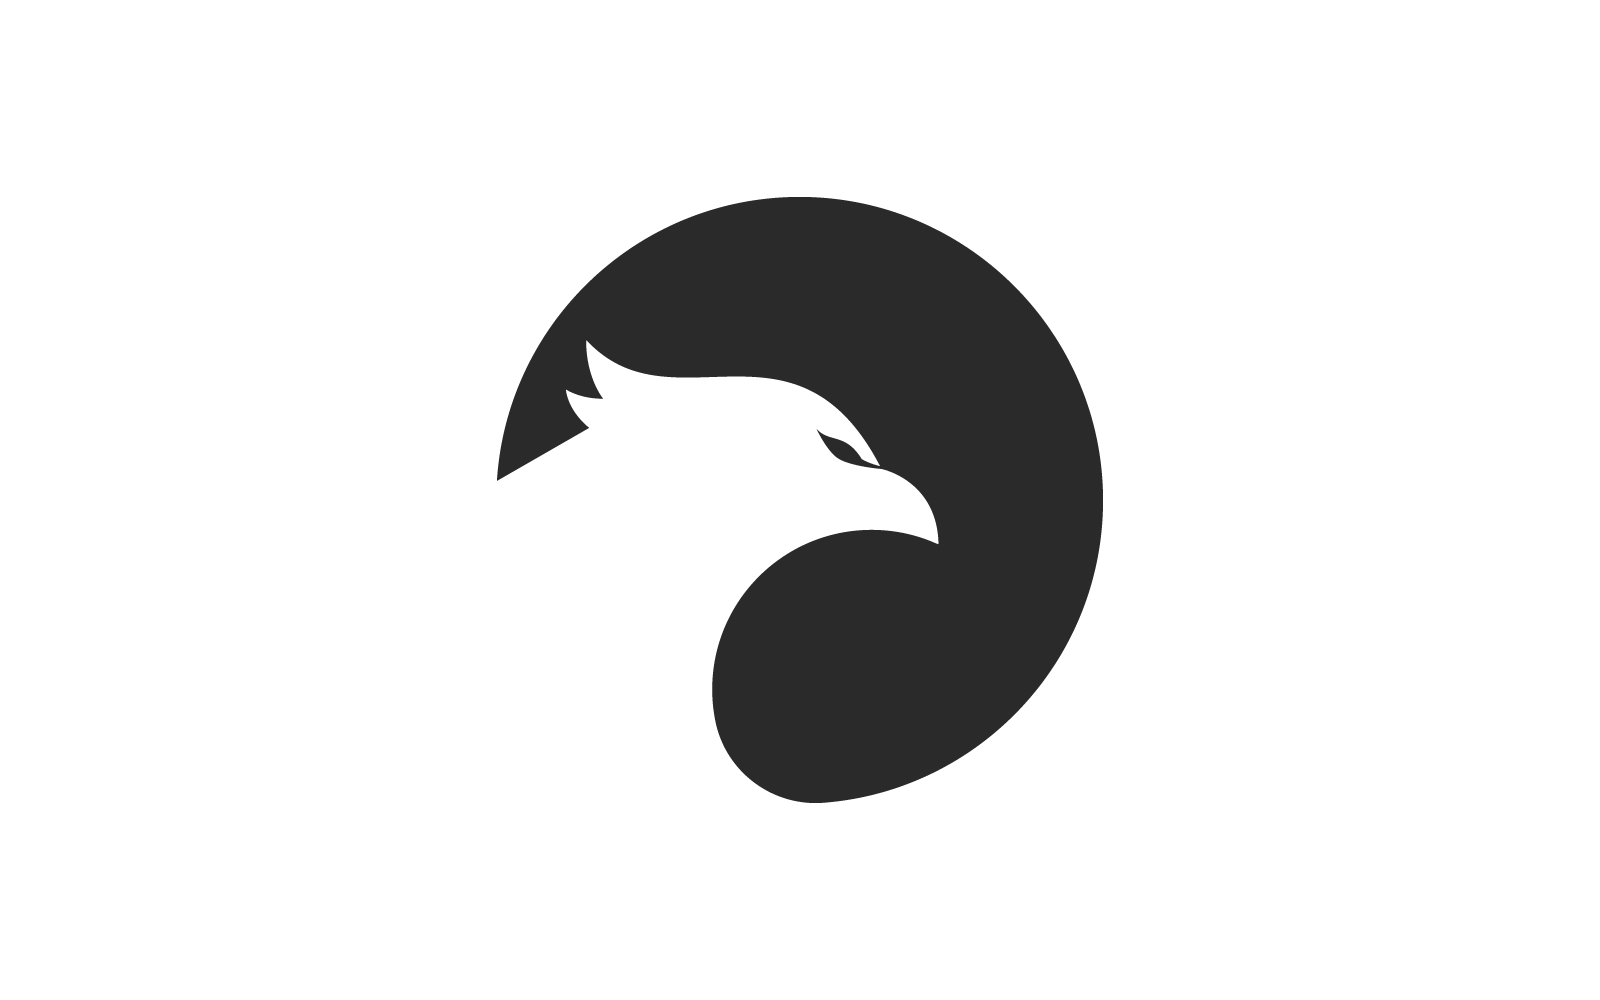 Falcon eagle bird logo vector flat design template